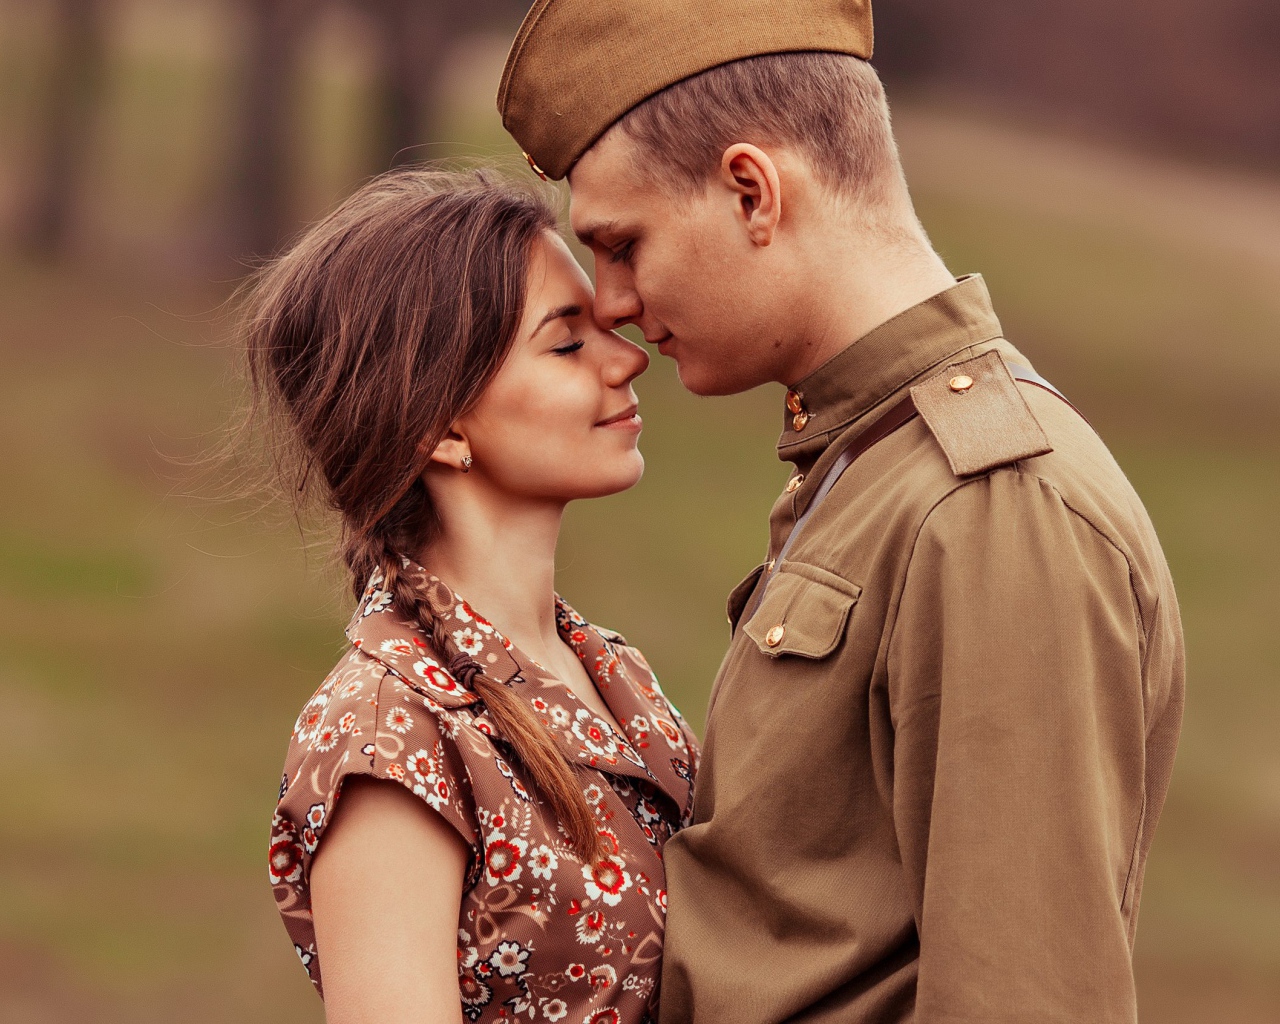 Девушка встречает солдата с войны, ретро фото 